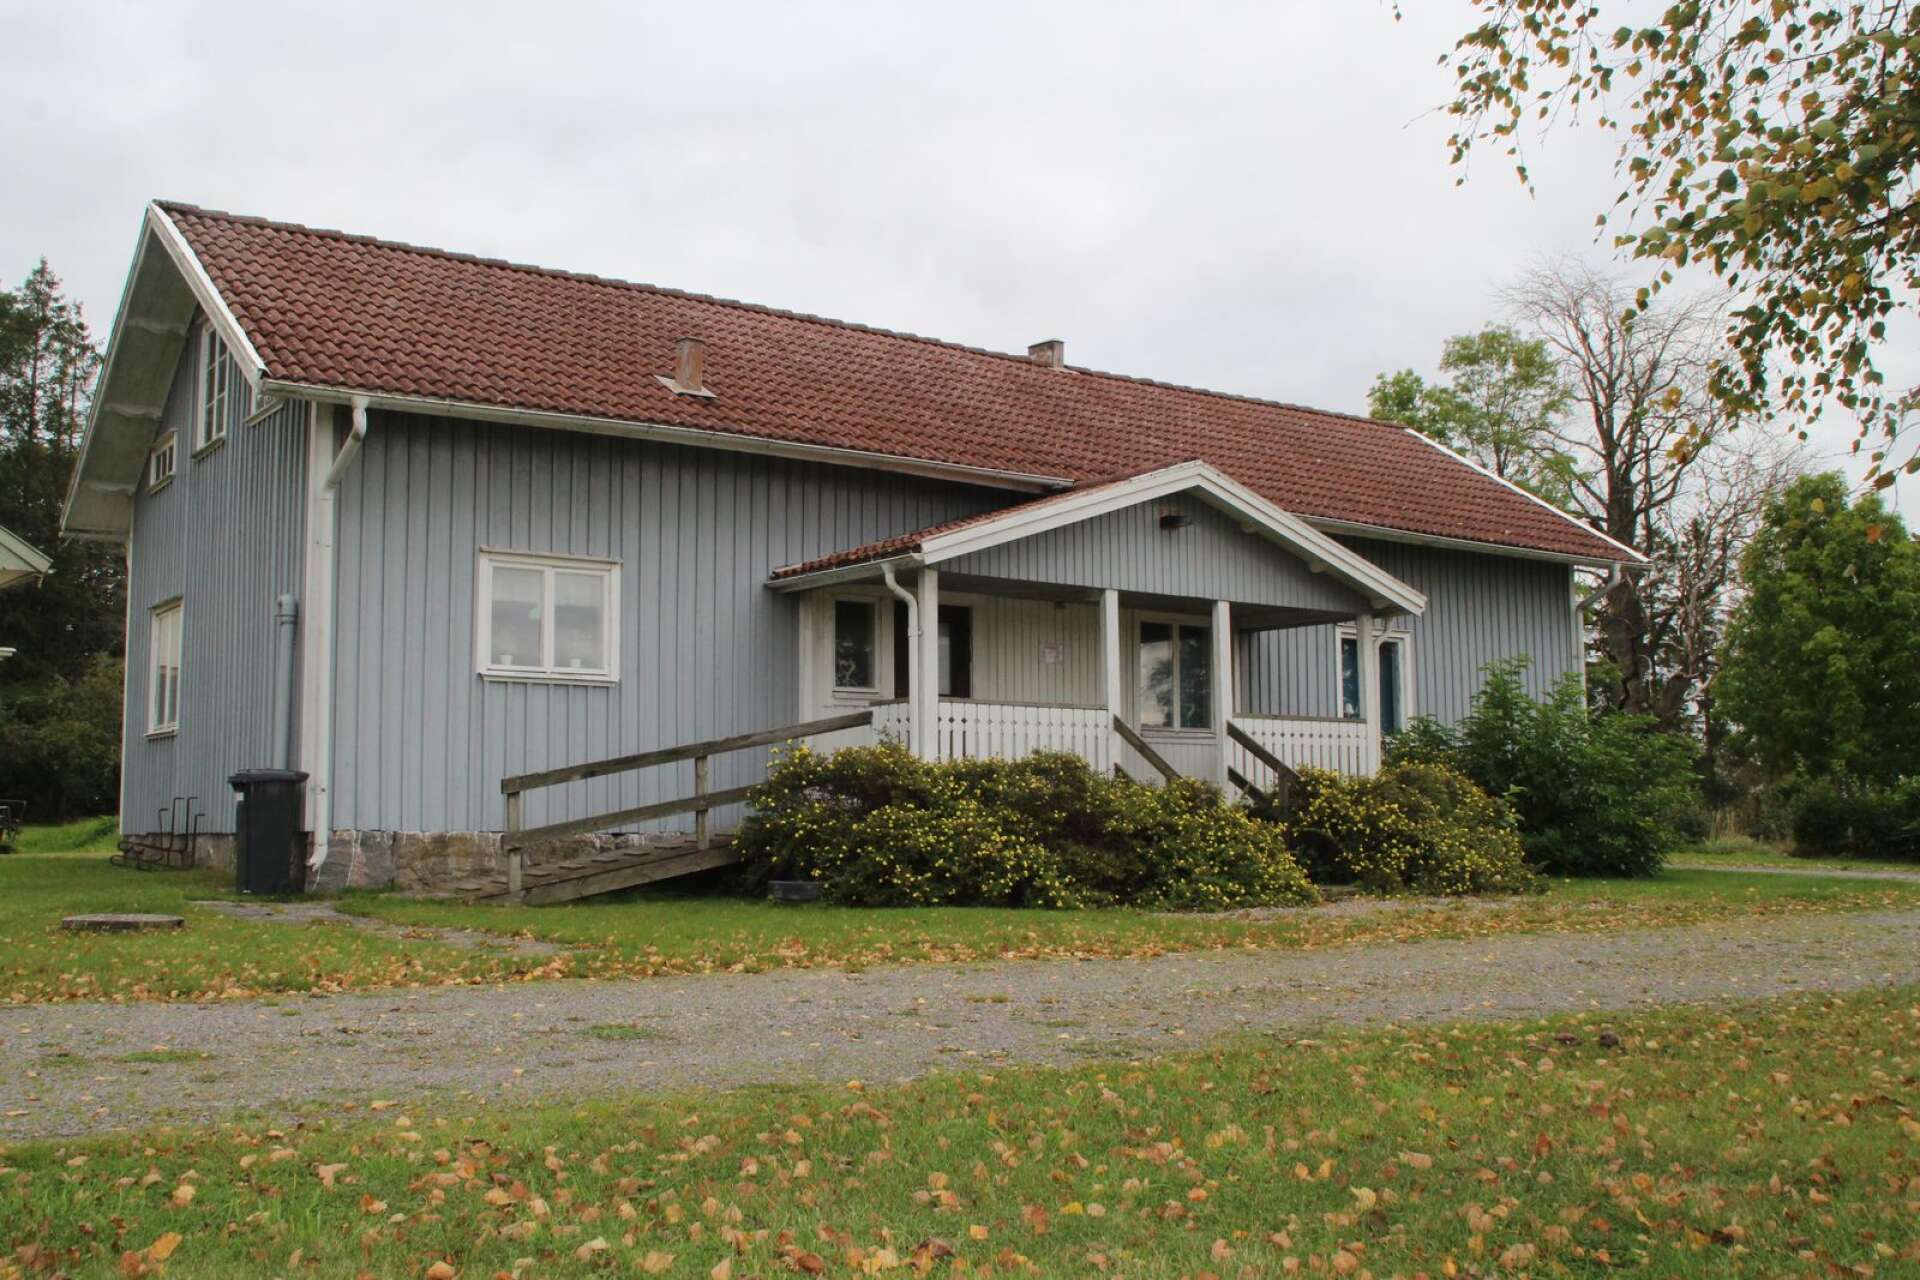 Hålegården är bygdens samlingsplats och drivs av Håle intresseförening.